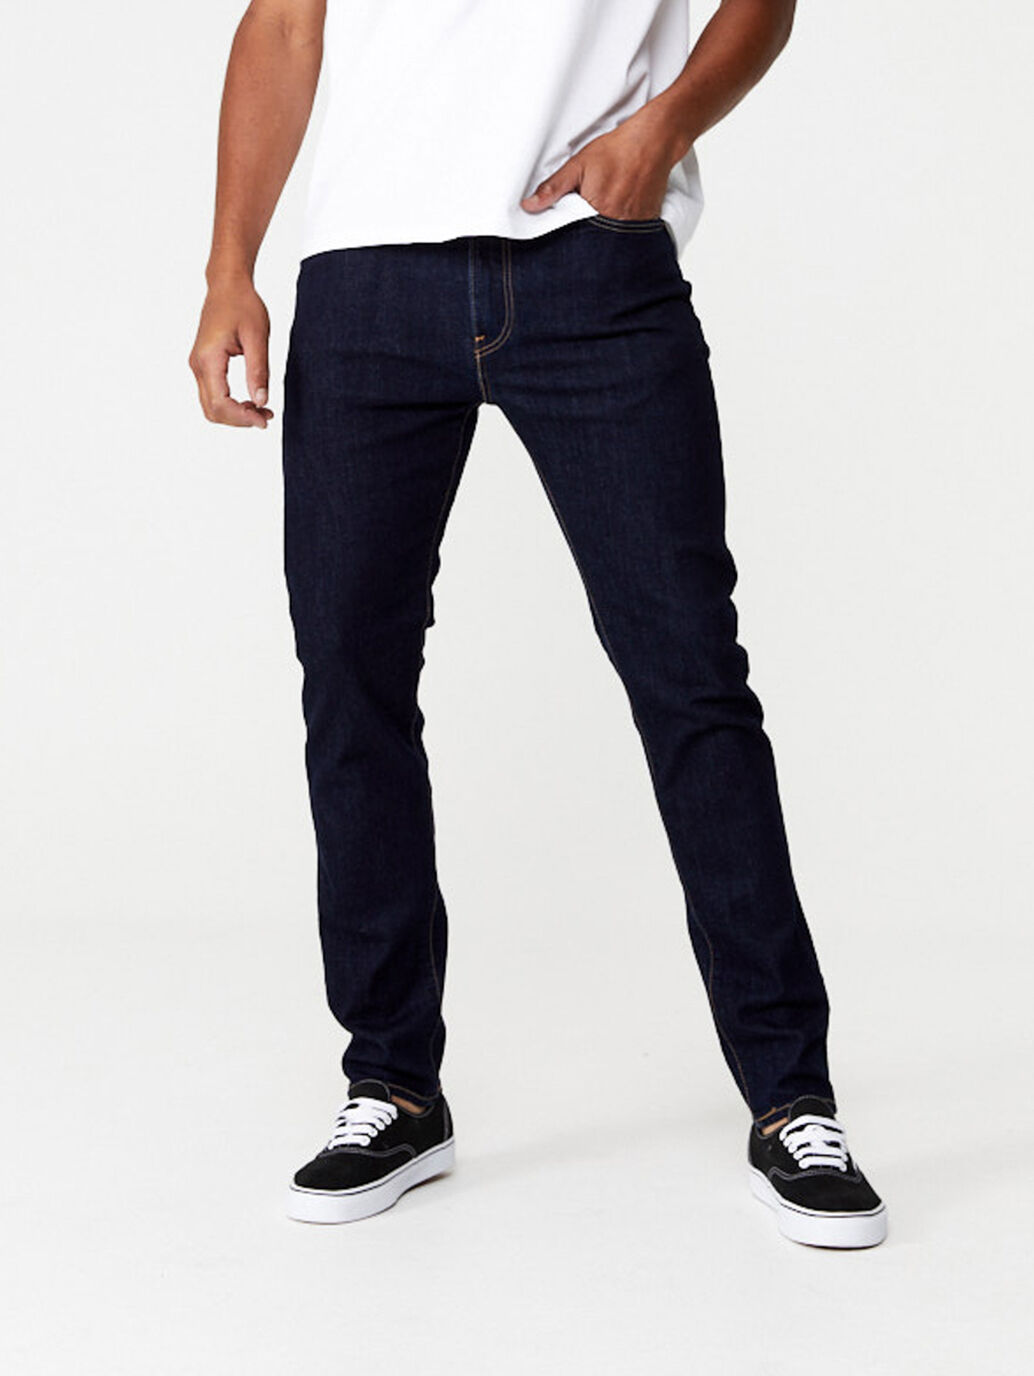 jeans 510 levis